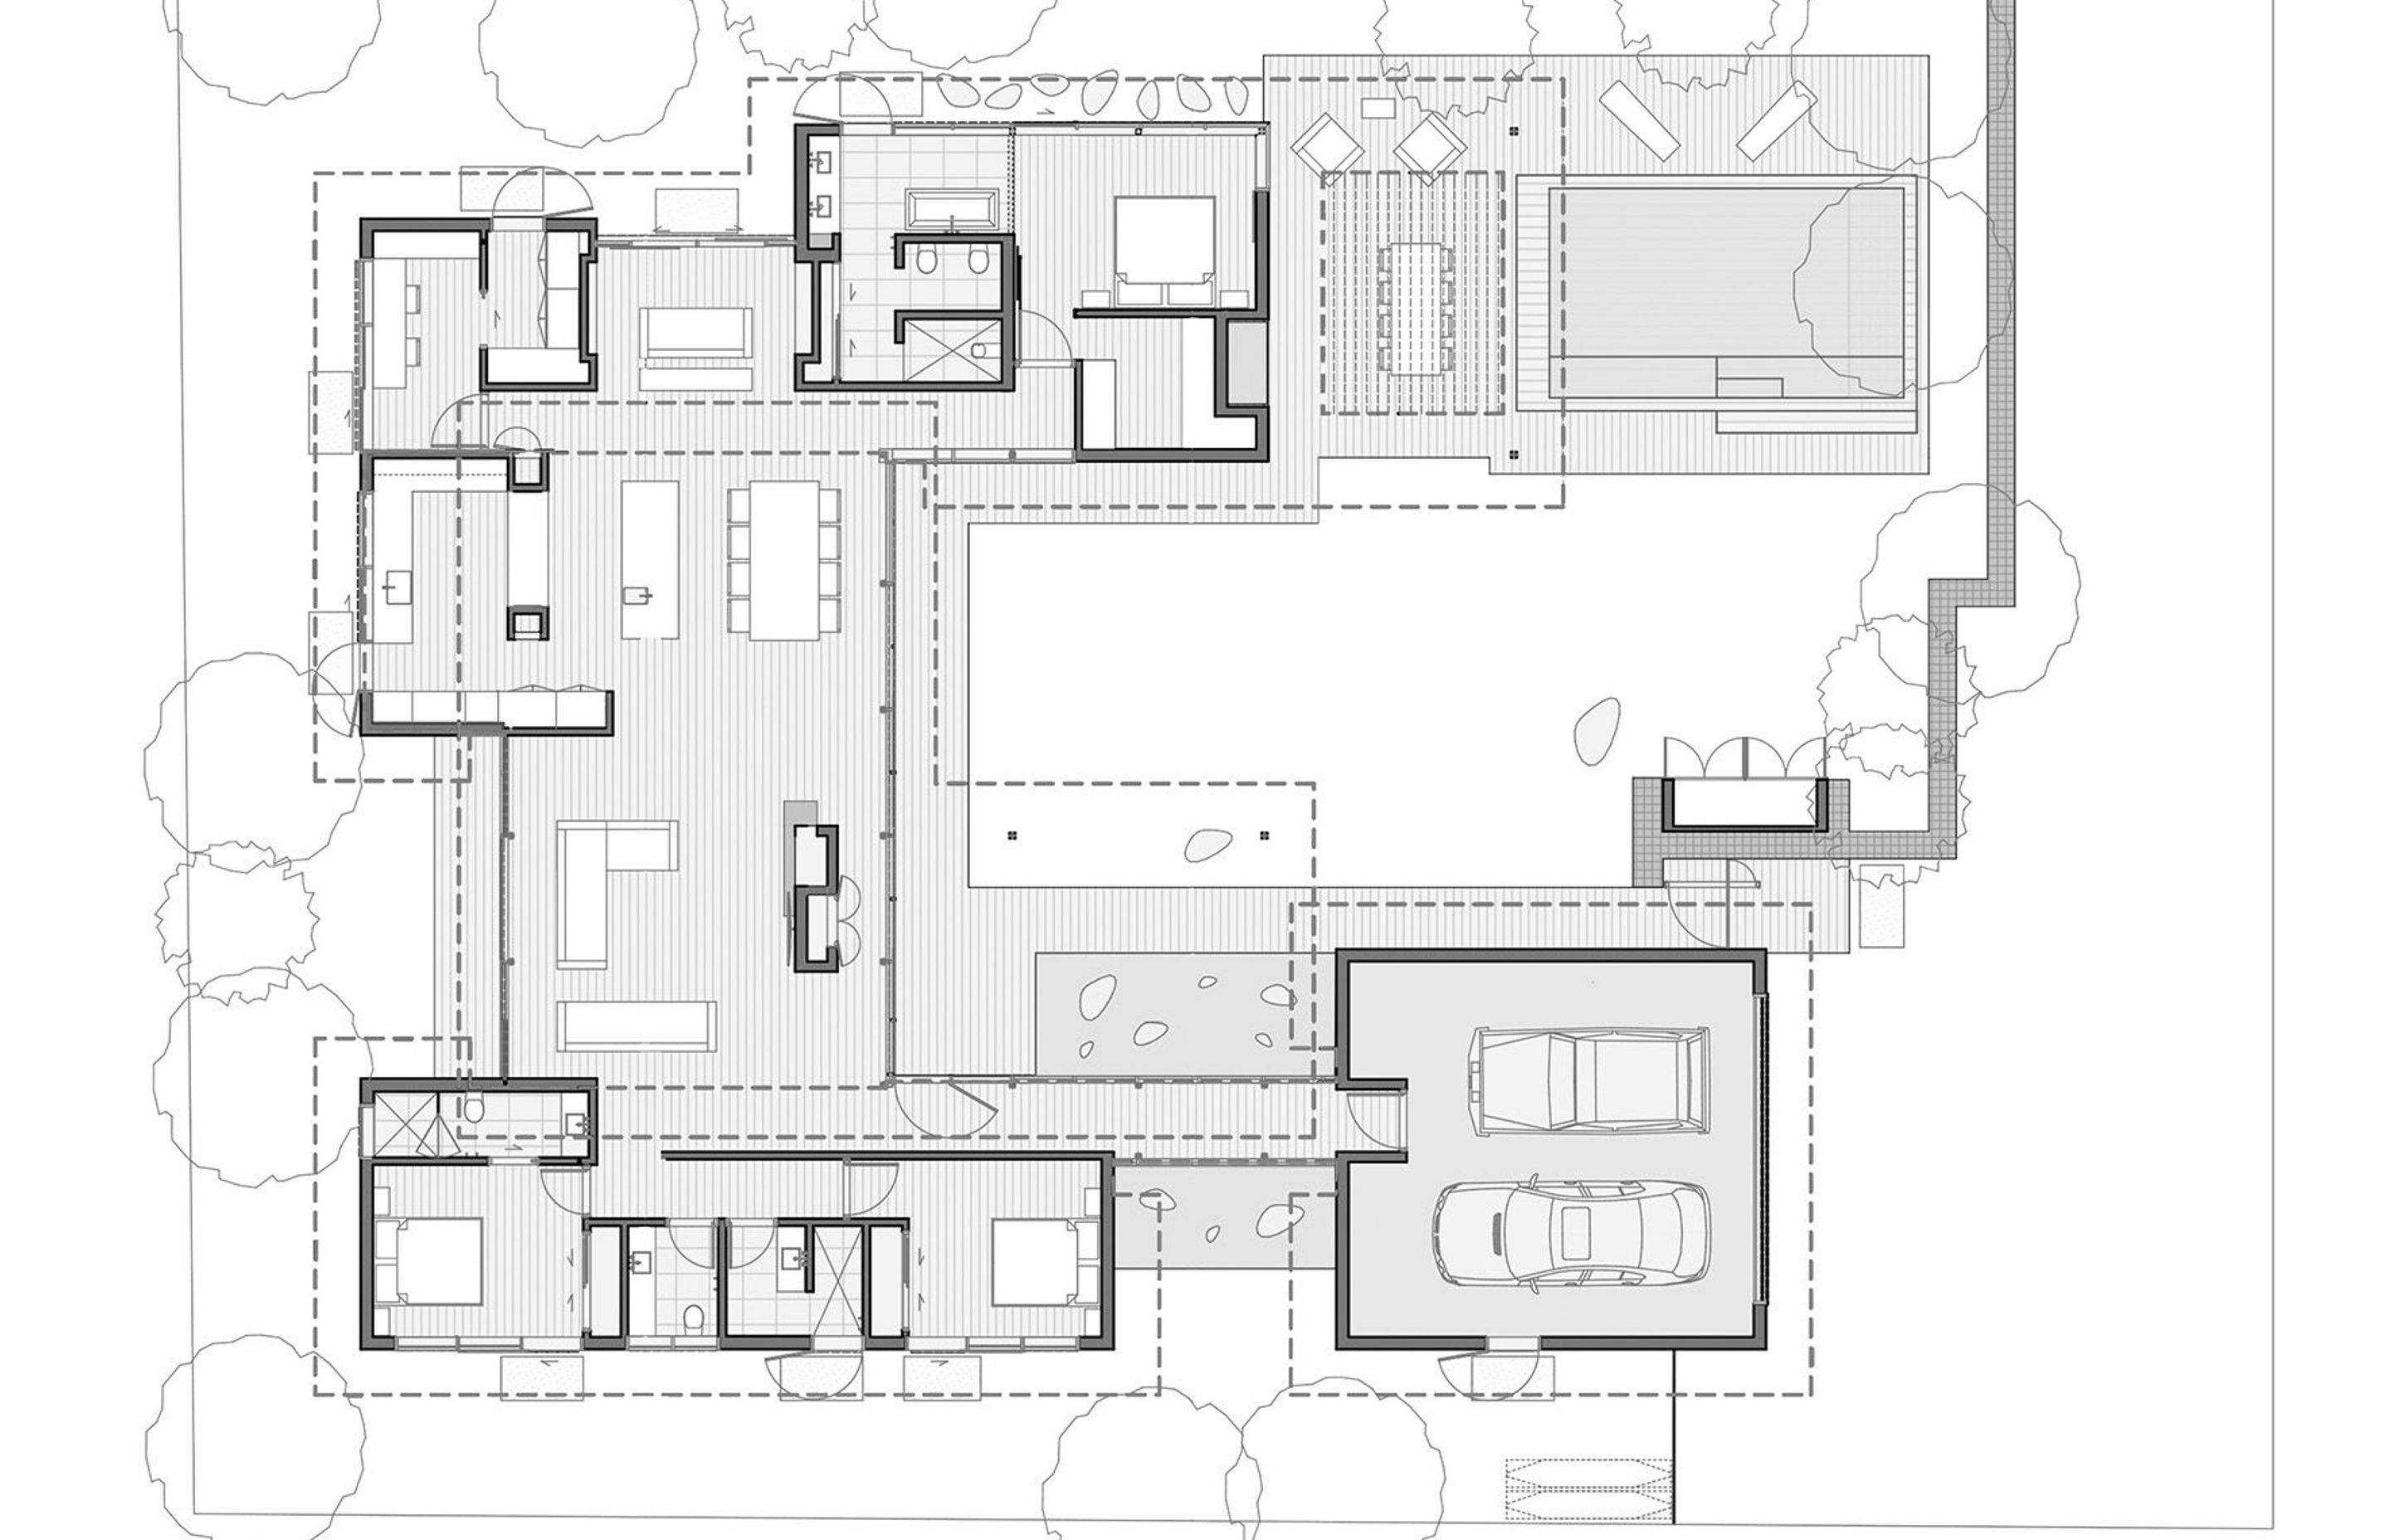 Floor plan by RB Studio.